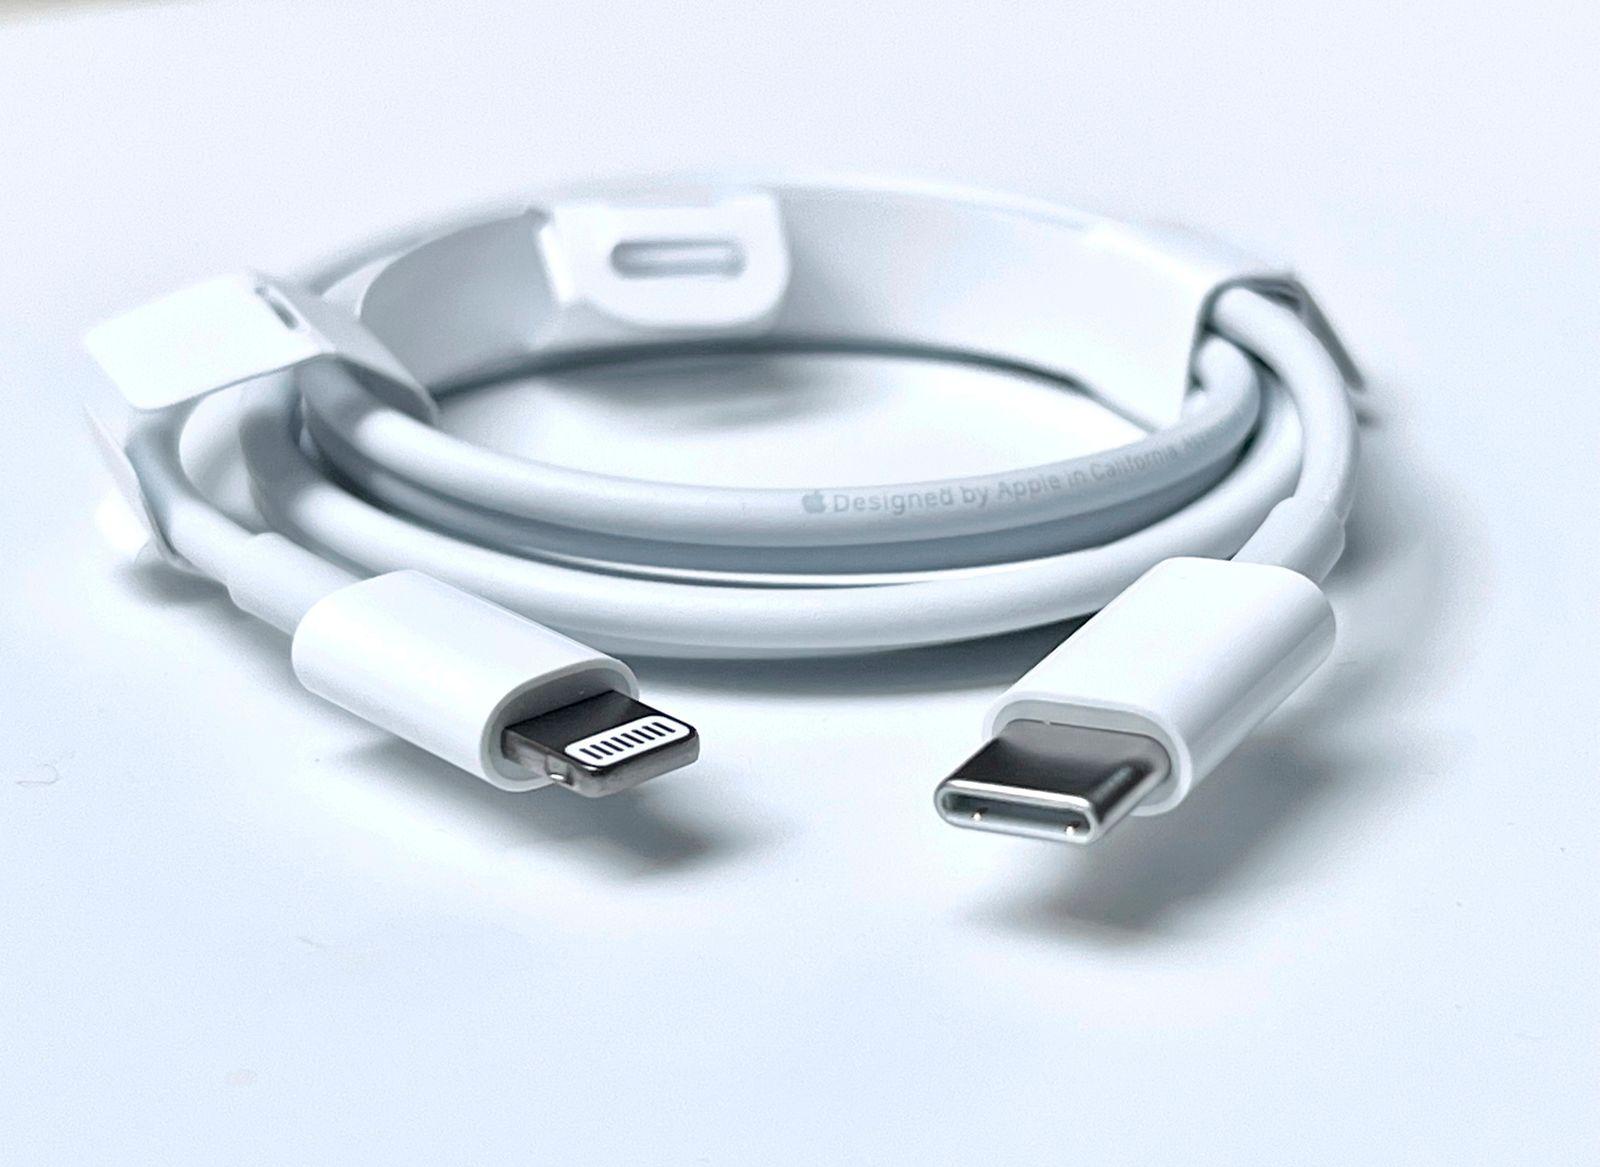 USB-C: ЕС примет решение об общем стандарте зарядных устройств 7 июня (EDCC7BA1 0DFE 479B AD8E 2191C7EDA4BA)